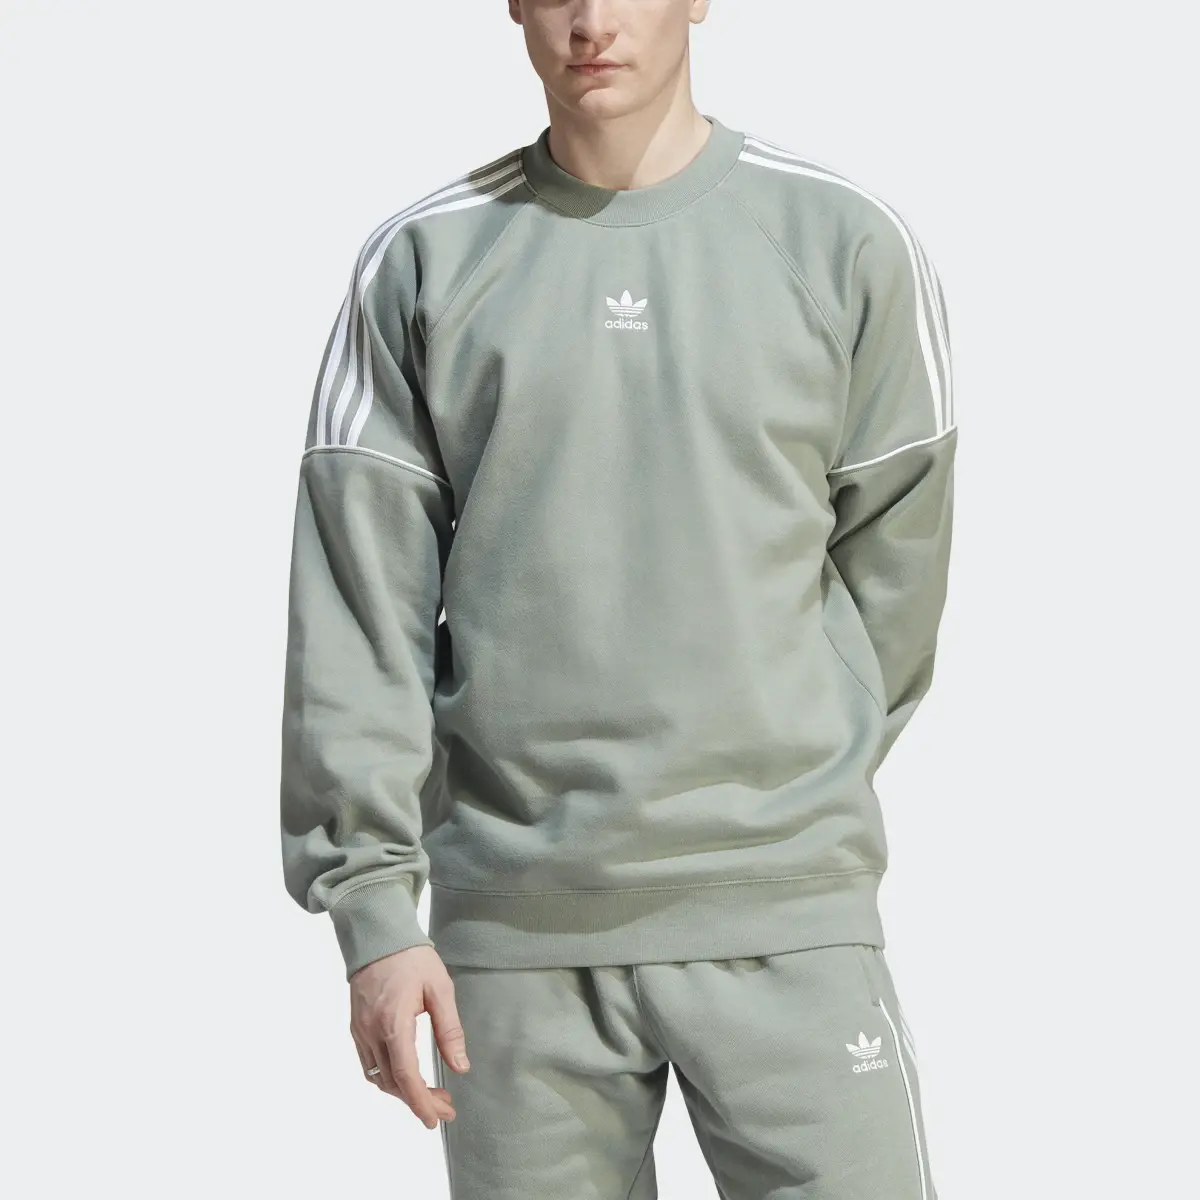 Adidas Rekive Crew Sweatshirt. 1